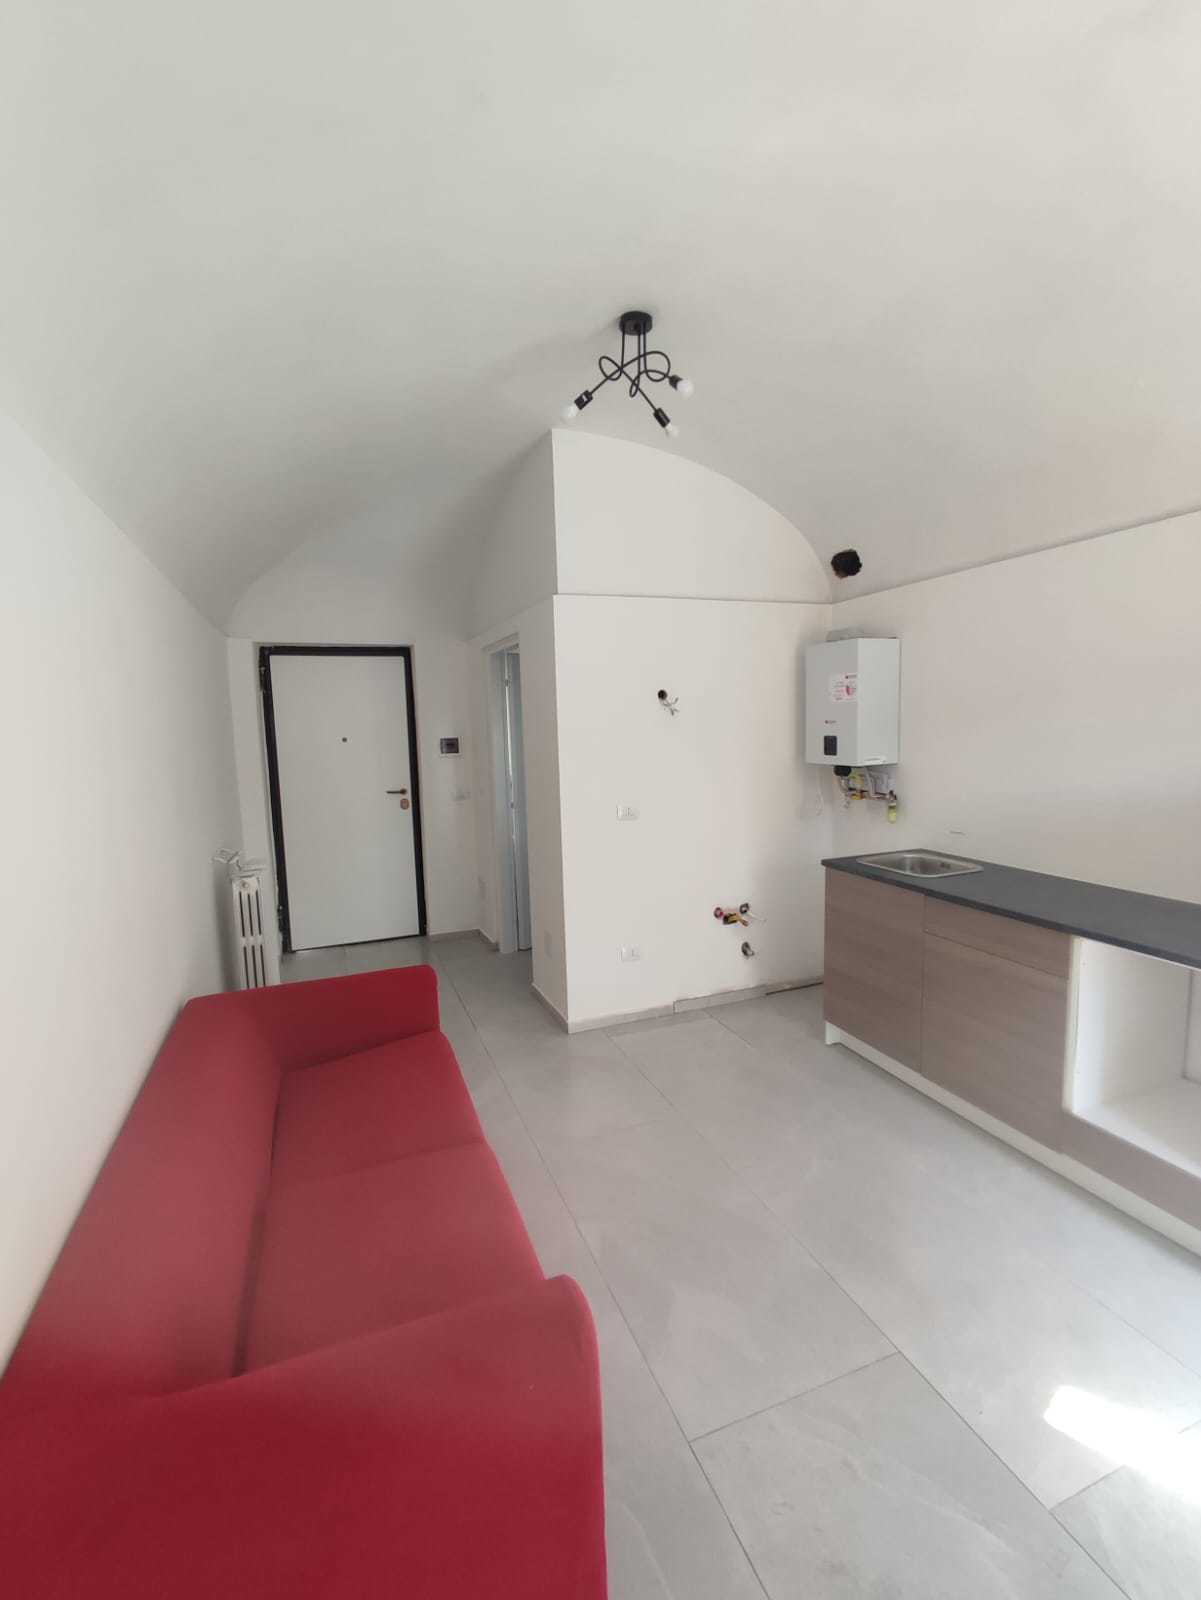 Appartamento nuovo in via francesco donato 27, Vercelli